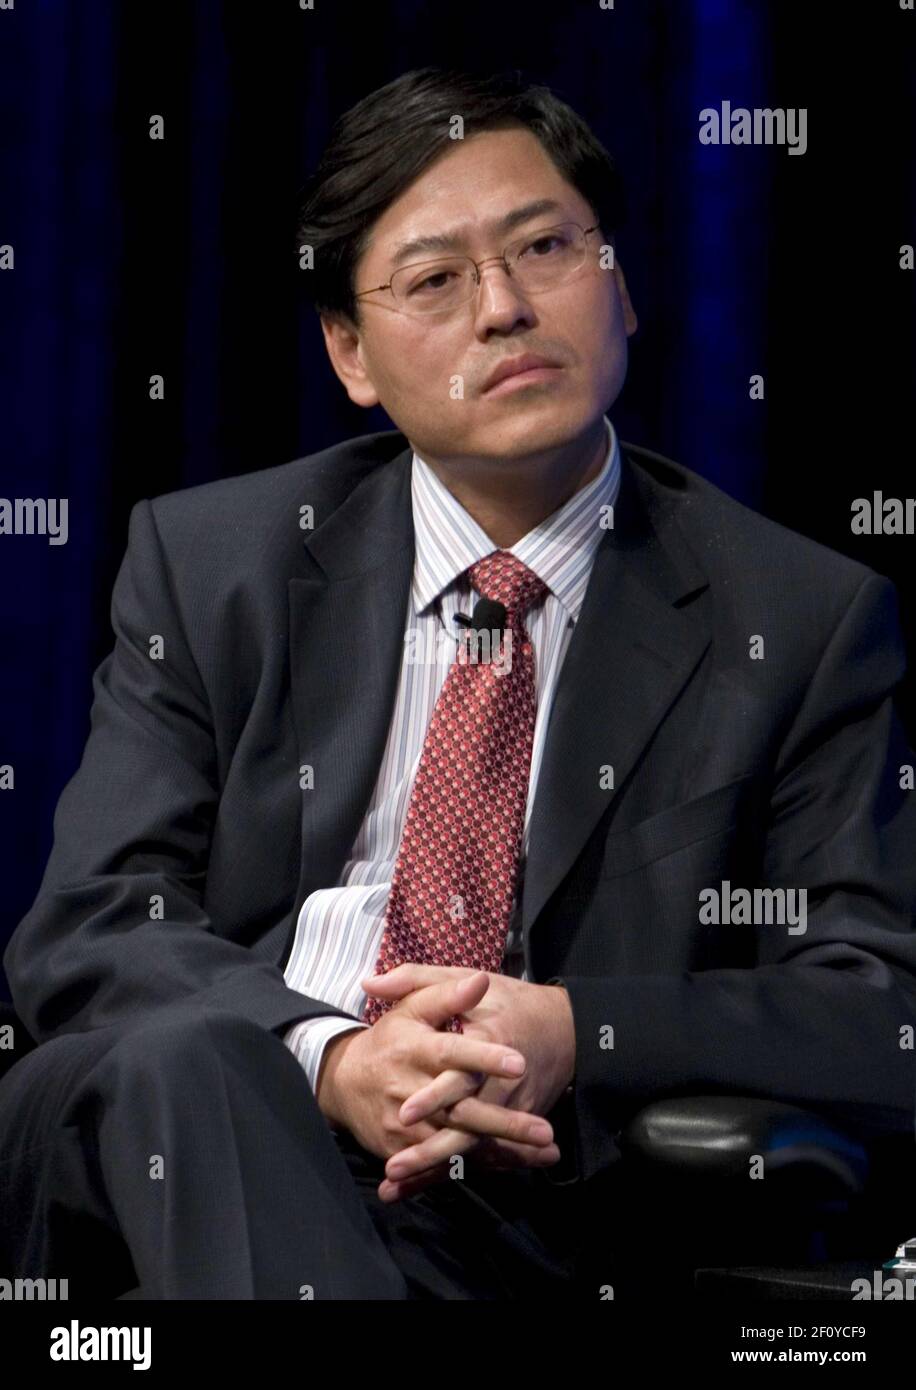 18 novembre 2008 - Washington, D.C. - Yang Yuanqing, Président de Lenovo. Crédit photo: Kristoffer Tripplaar/ Sipa Press/0811232020 Banque D'Images